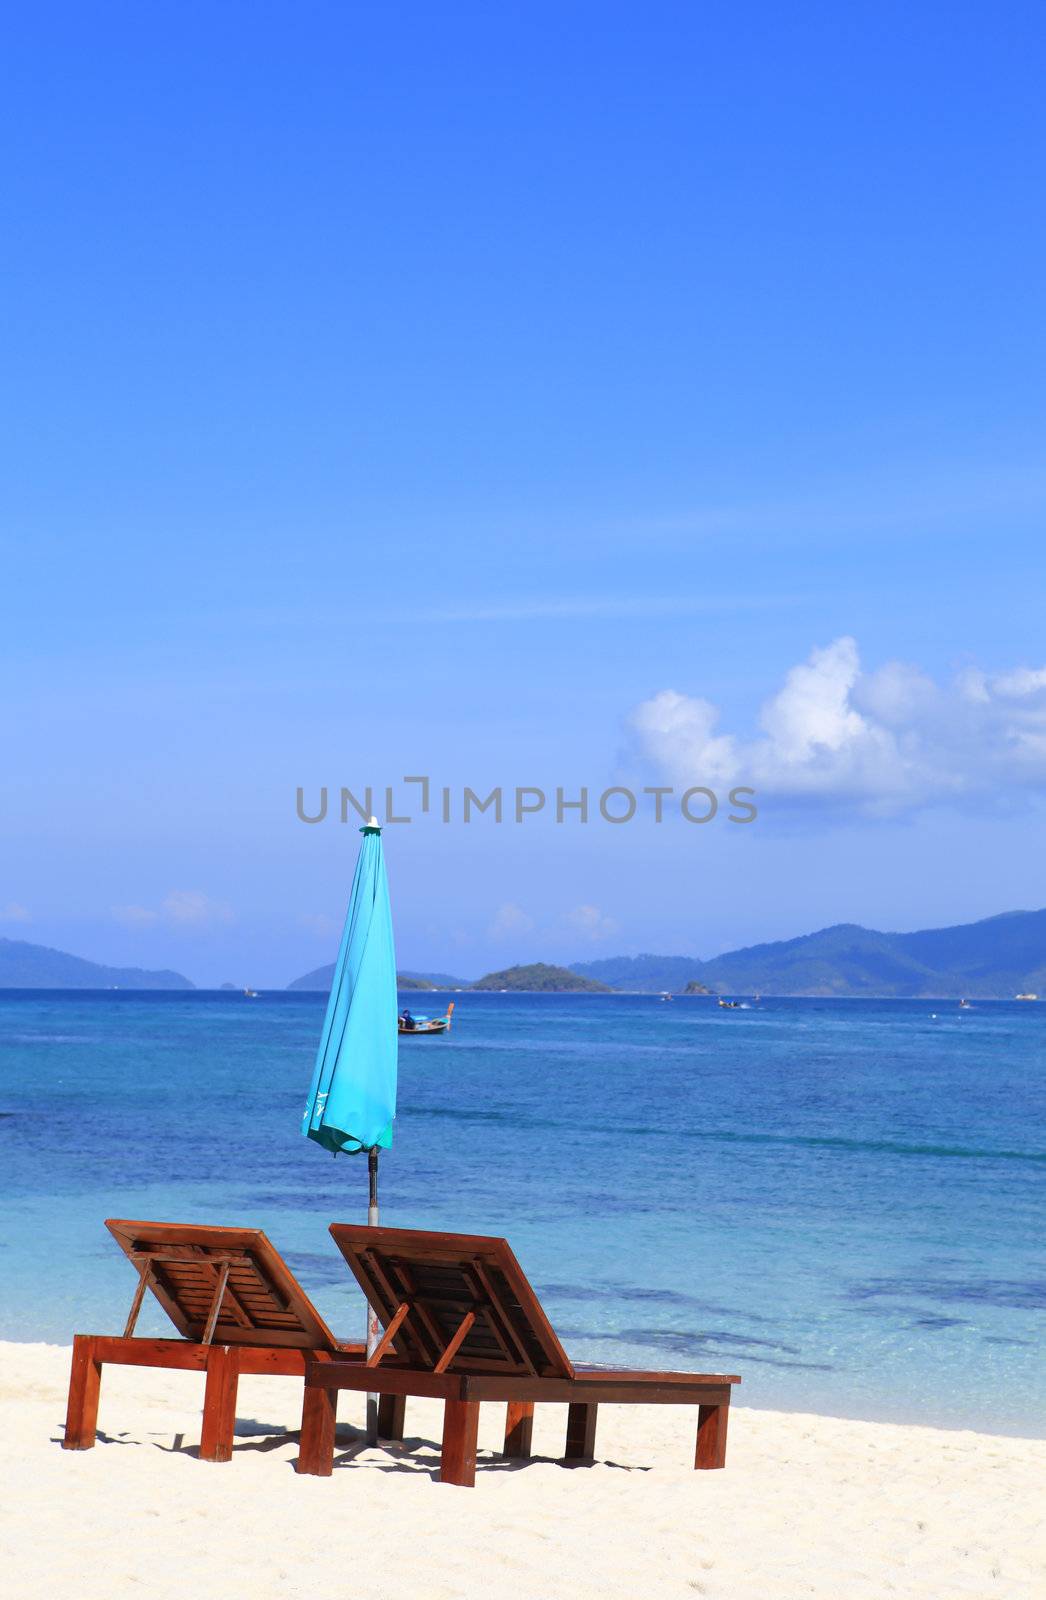 Beach furniture set in Lipe island, Thailand by rufous